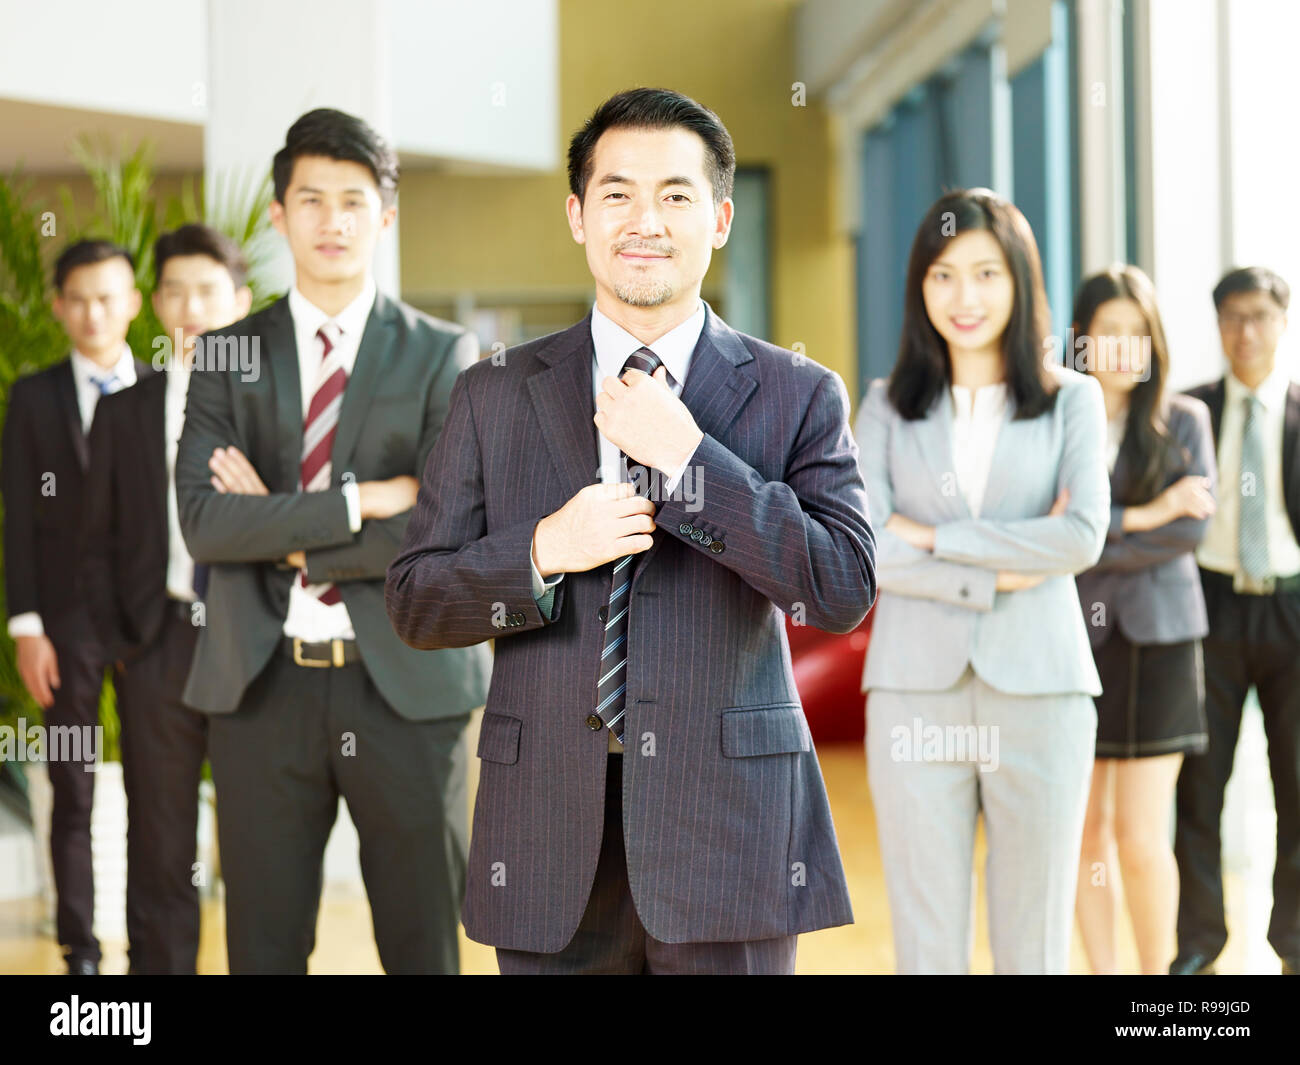 Retrato de un equipo de éxito de empresarios y empresarias de Asia, mirando a la cámara sonriendo. Foto de stock